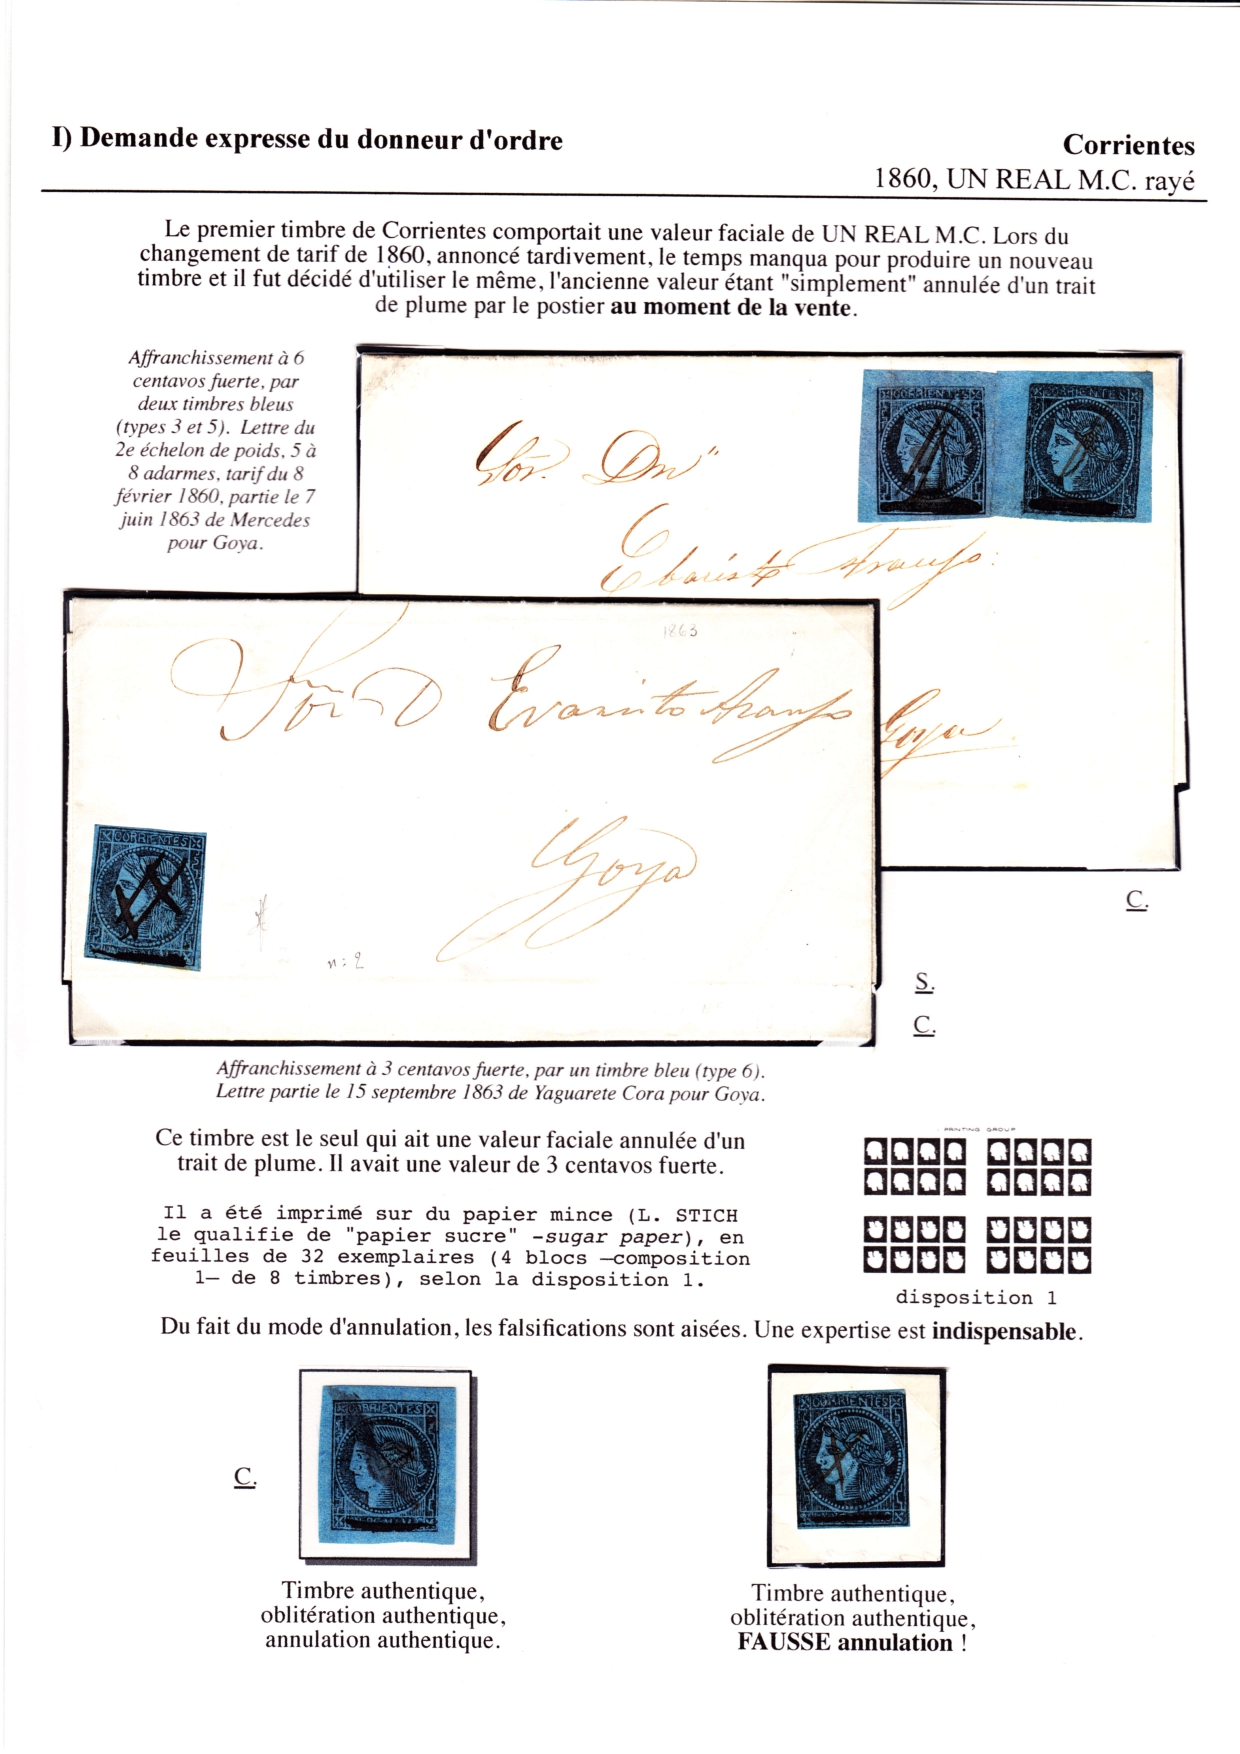 Les débuts des timbres sans valeur faciale apparente p. 16